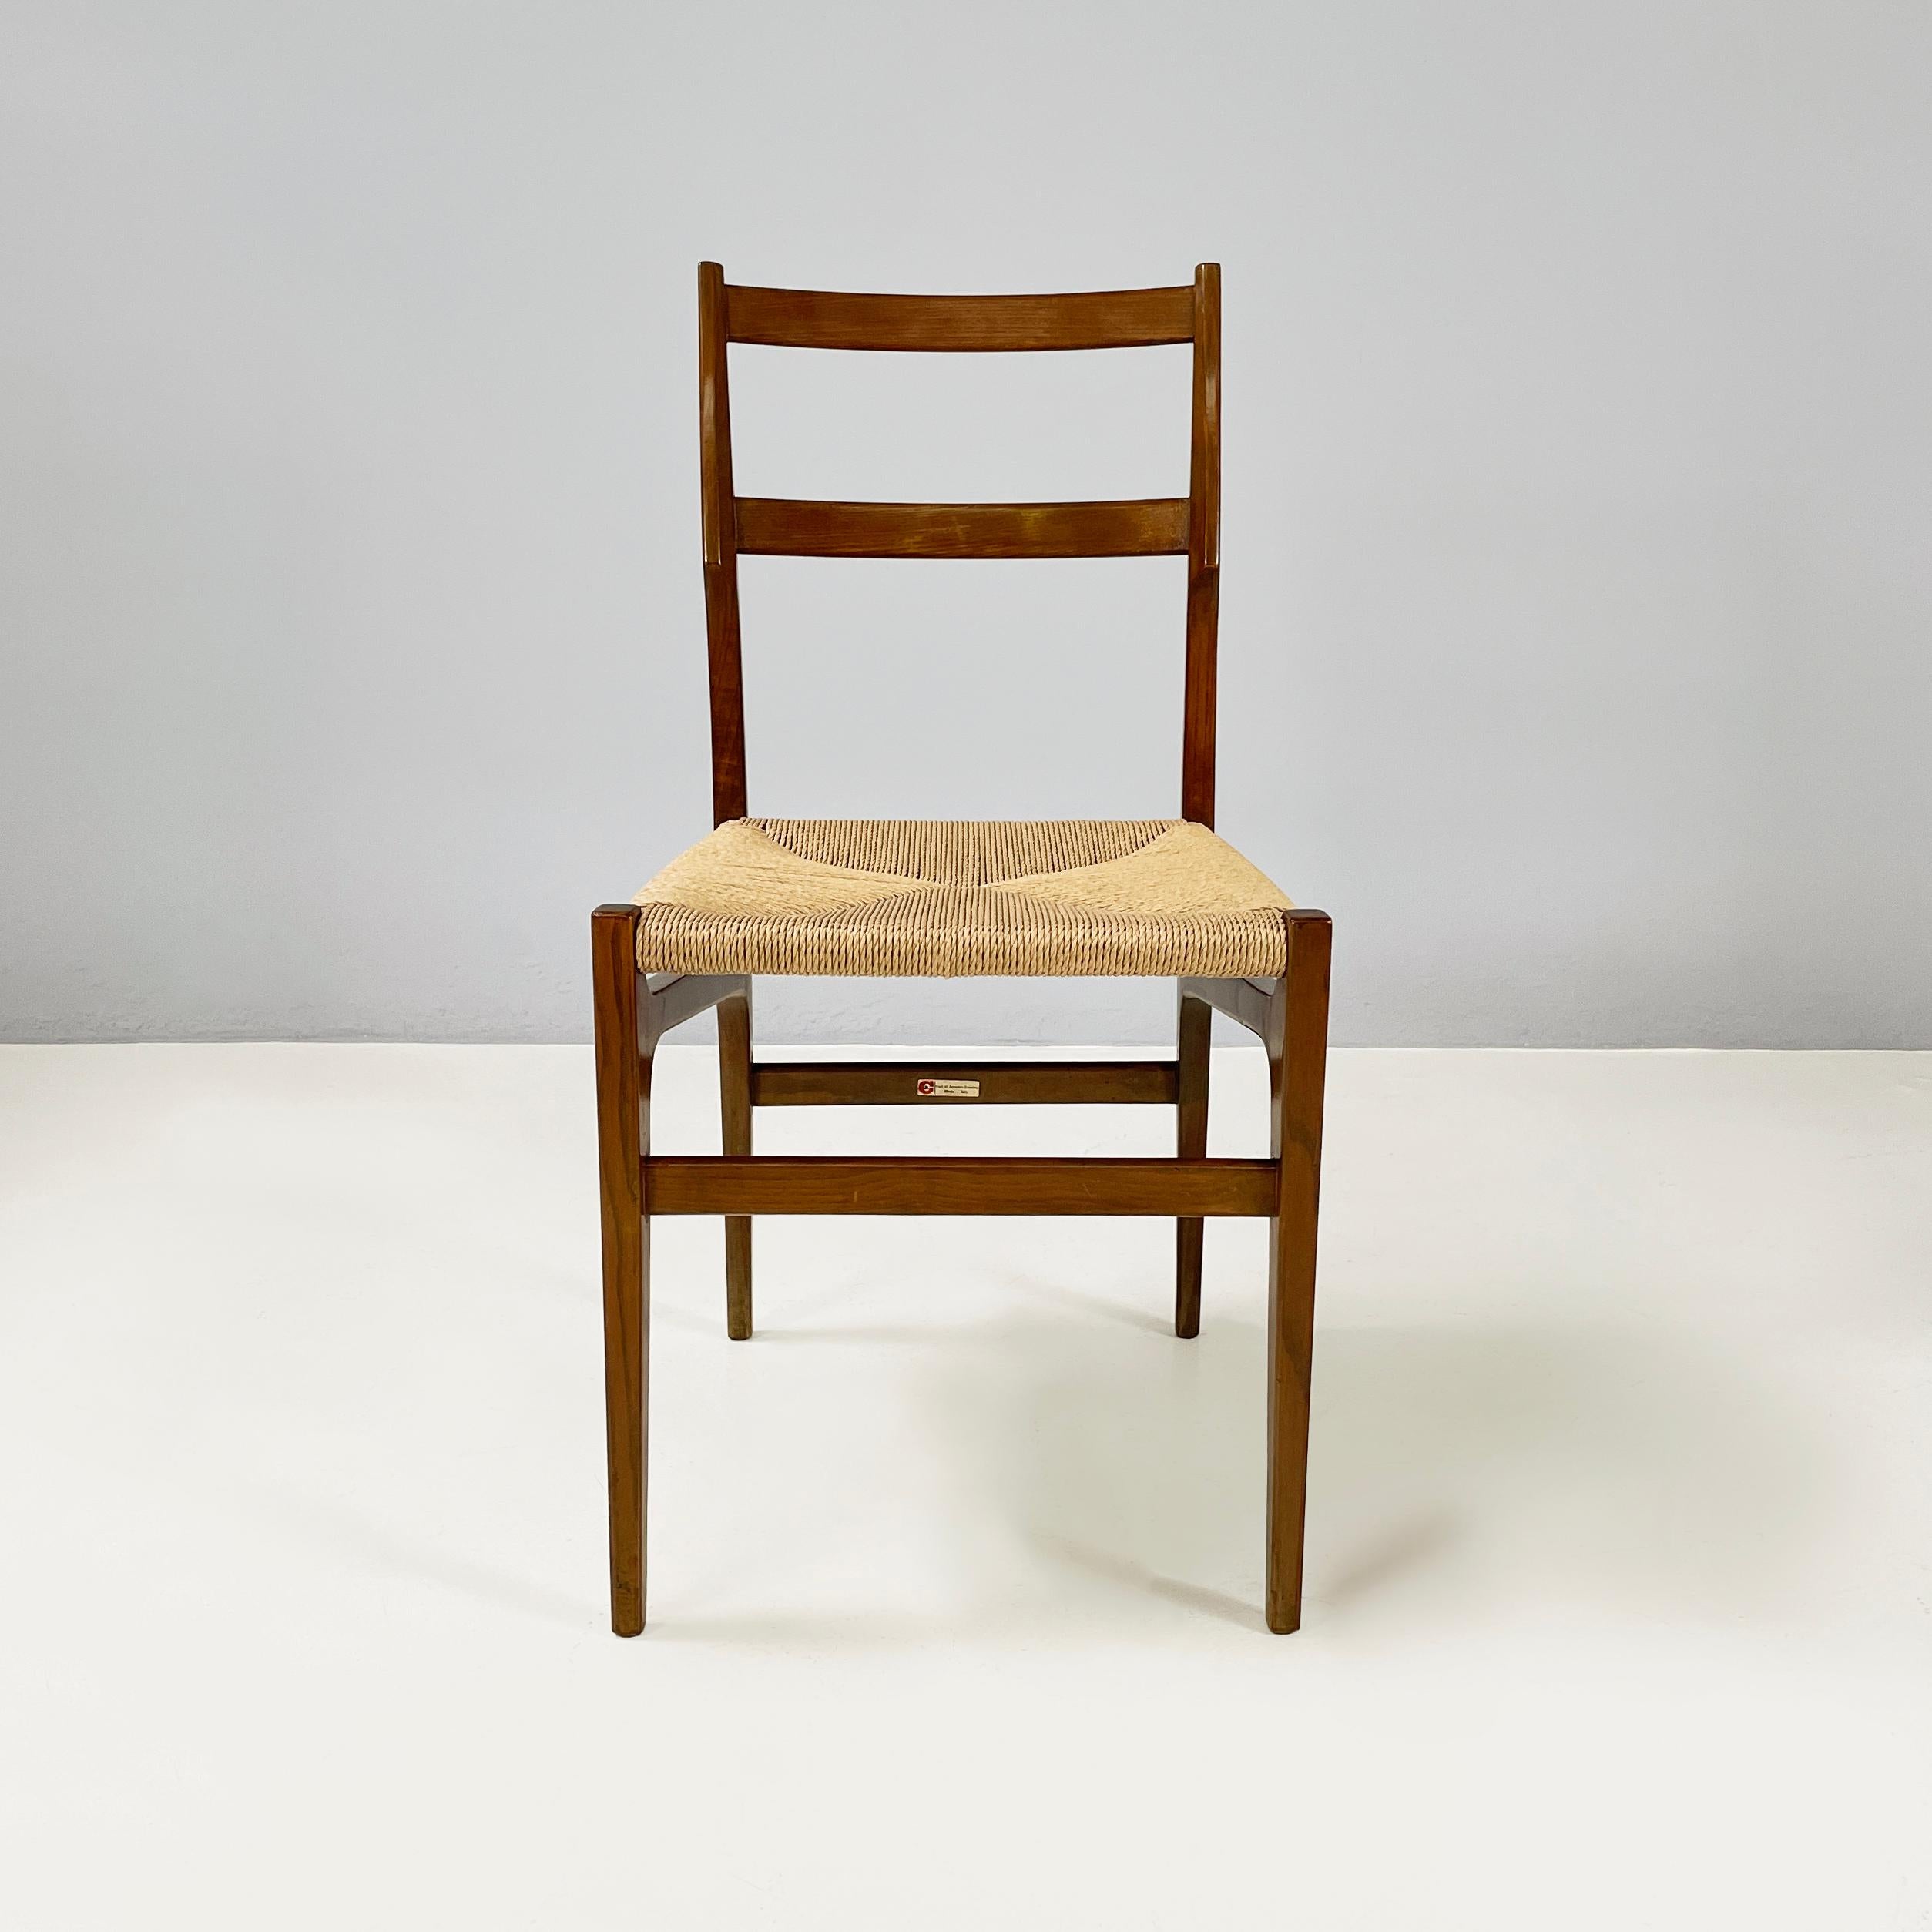 Italienische Stühle aus der Mitte des Jahrhunderts Hotel Parco dei Principi von Gio Ponti für Cassina, 1960er Jahre
Ein Paar ikonische Stühle mit quadratischem Sitz aus geflochtenem Stroh. Die Rückenlehne ist ganz aus Formholz. Holzbeine mit rundem